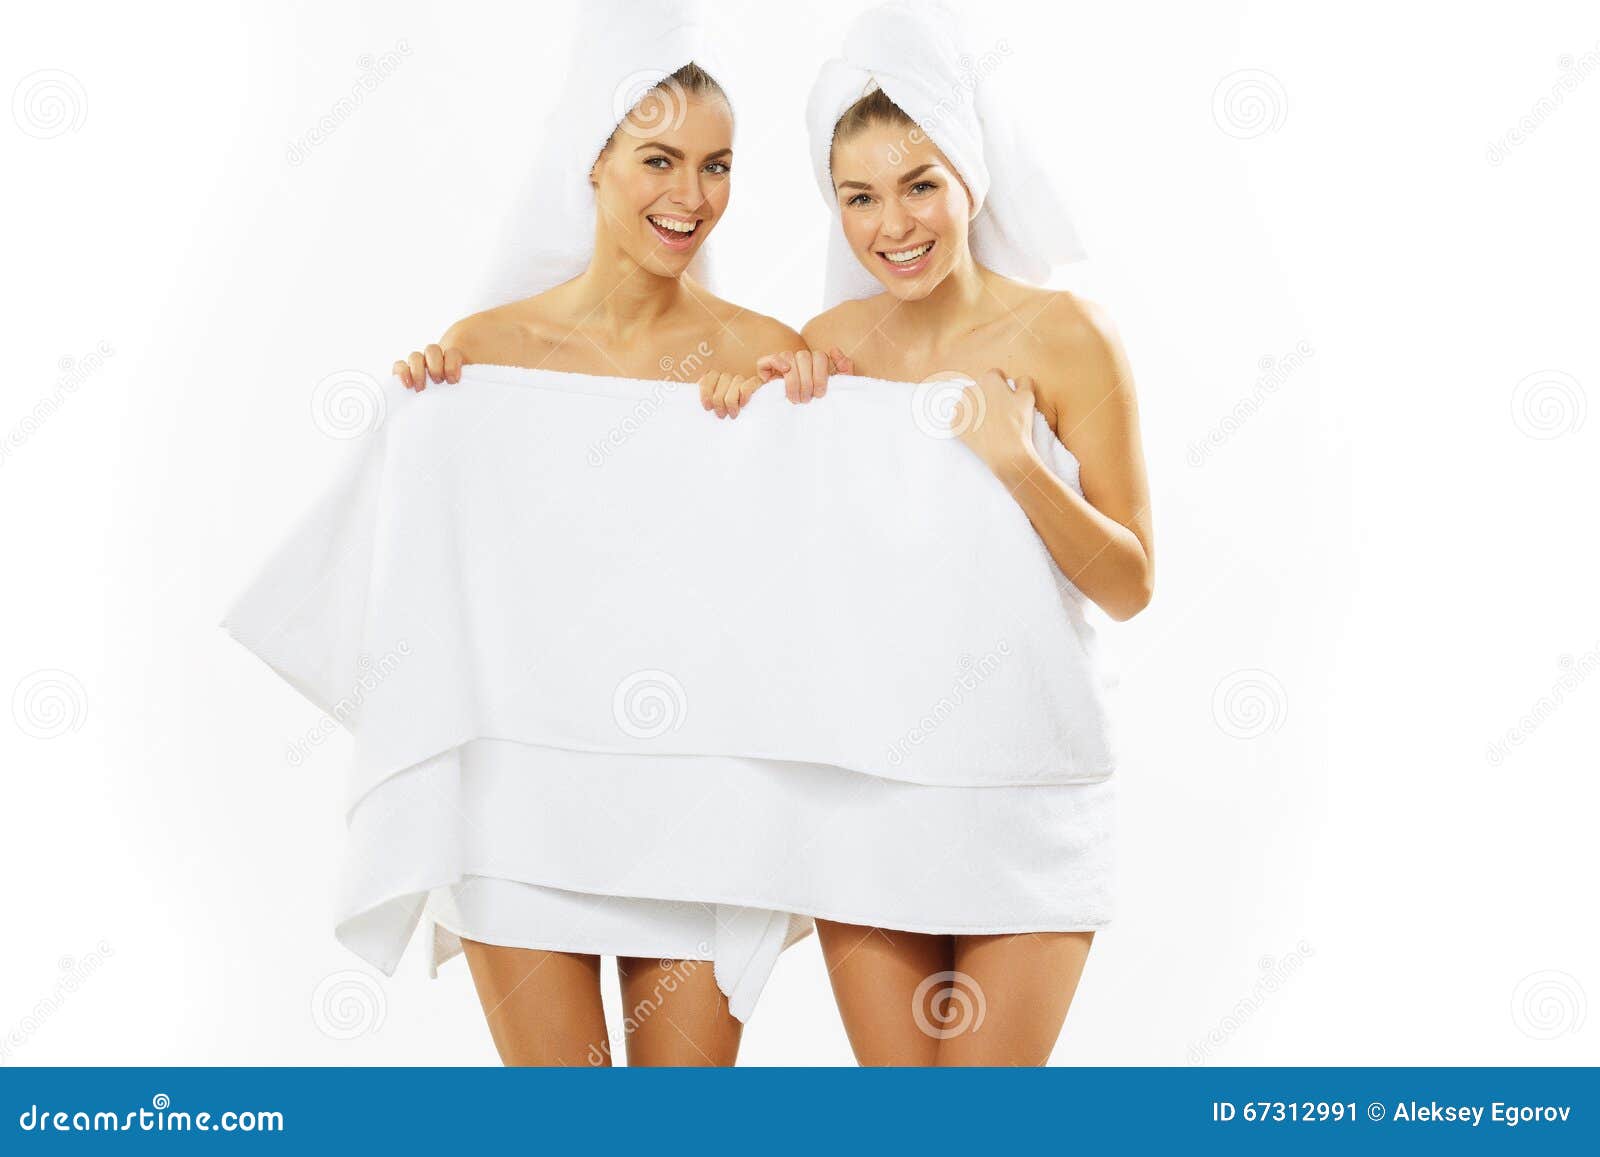 Прикрылась полотенцем. Подружки в полотенцах. Две девушки в полотенцах. Девушка в полотенце. Три девушки в полотенцах.